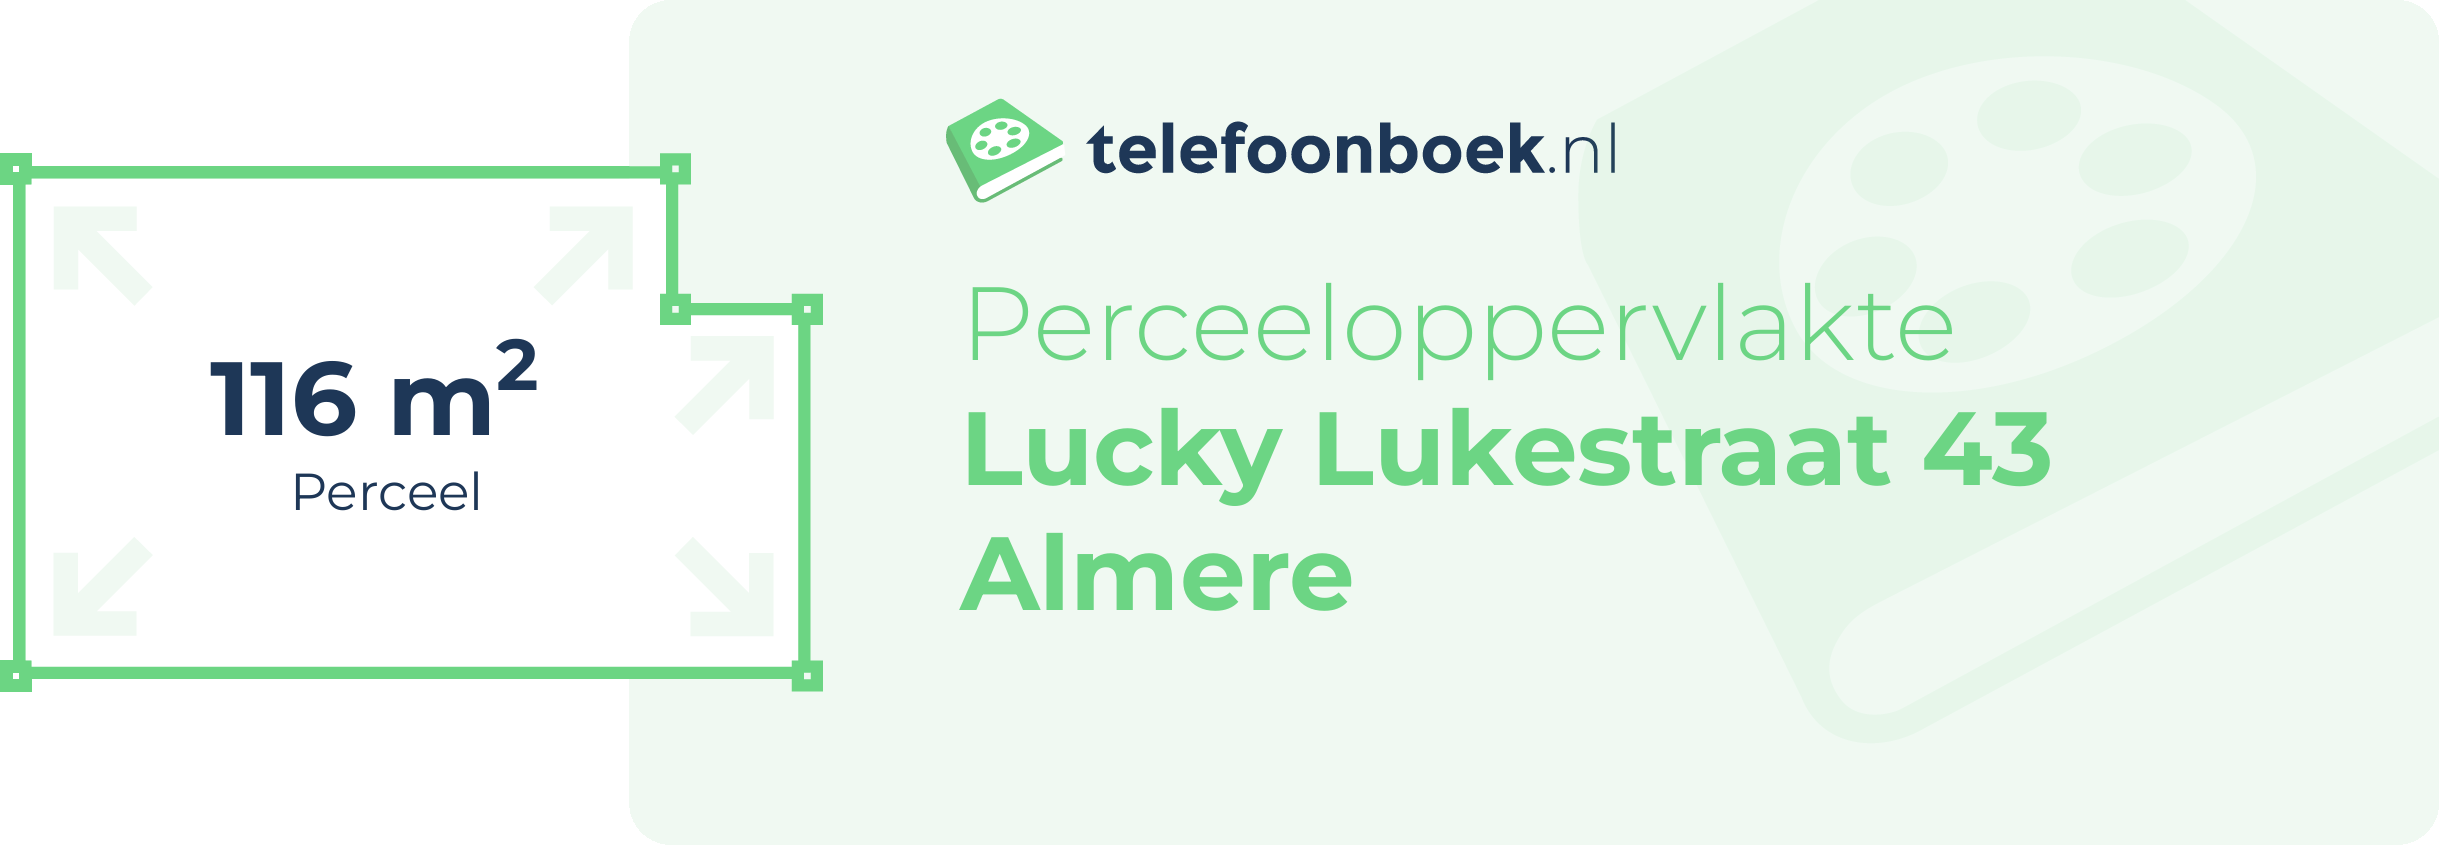 Perceeloppervlakte Lucky Lukestraat 43 Almere